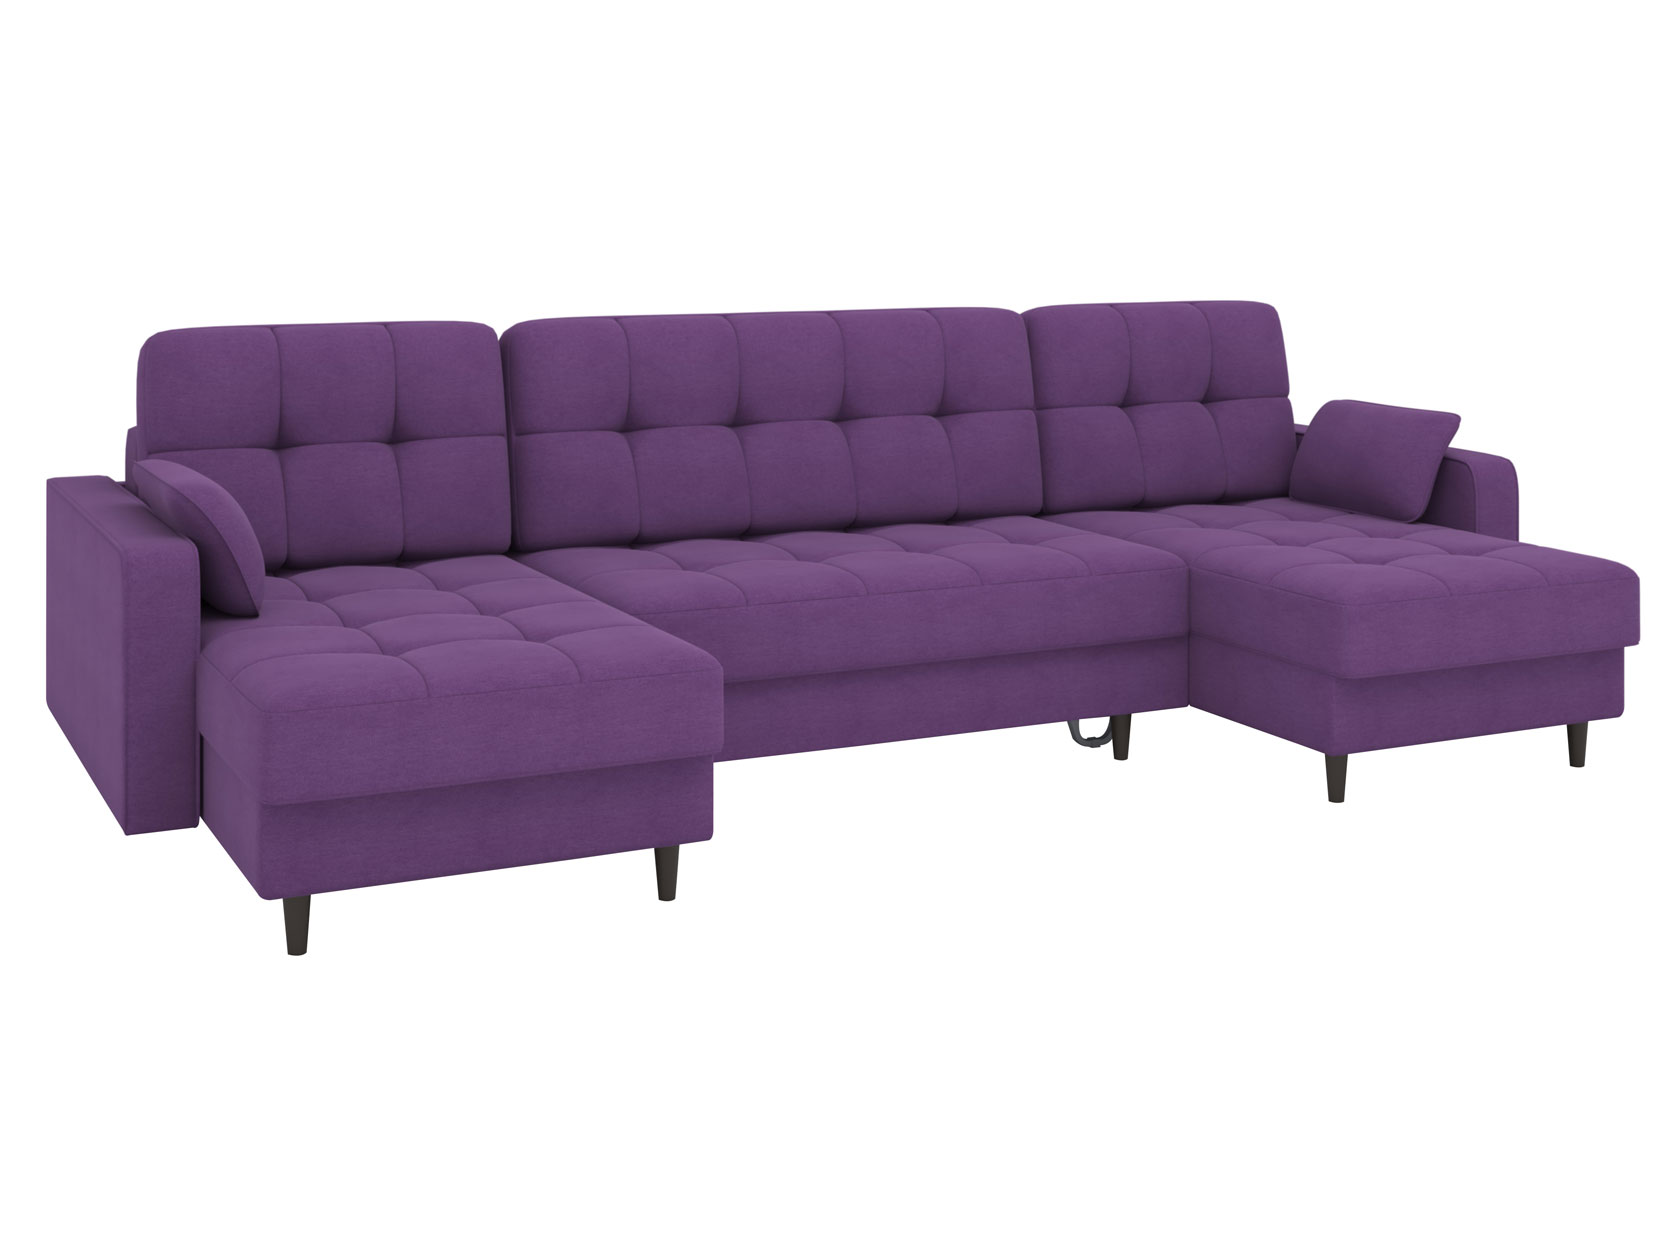 П-образный диван с оттоманками Санфорд фото 19